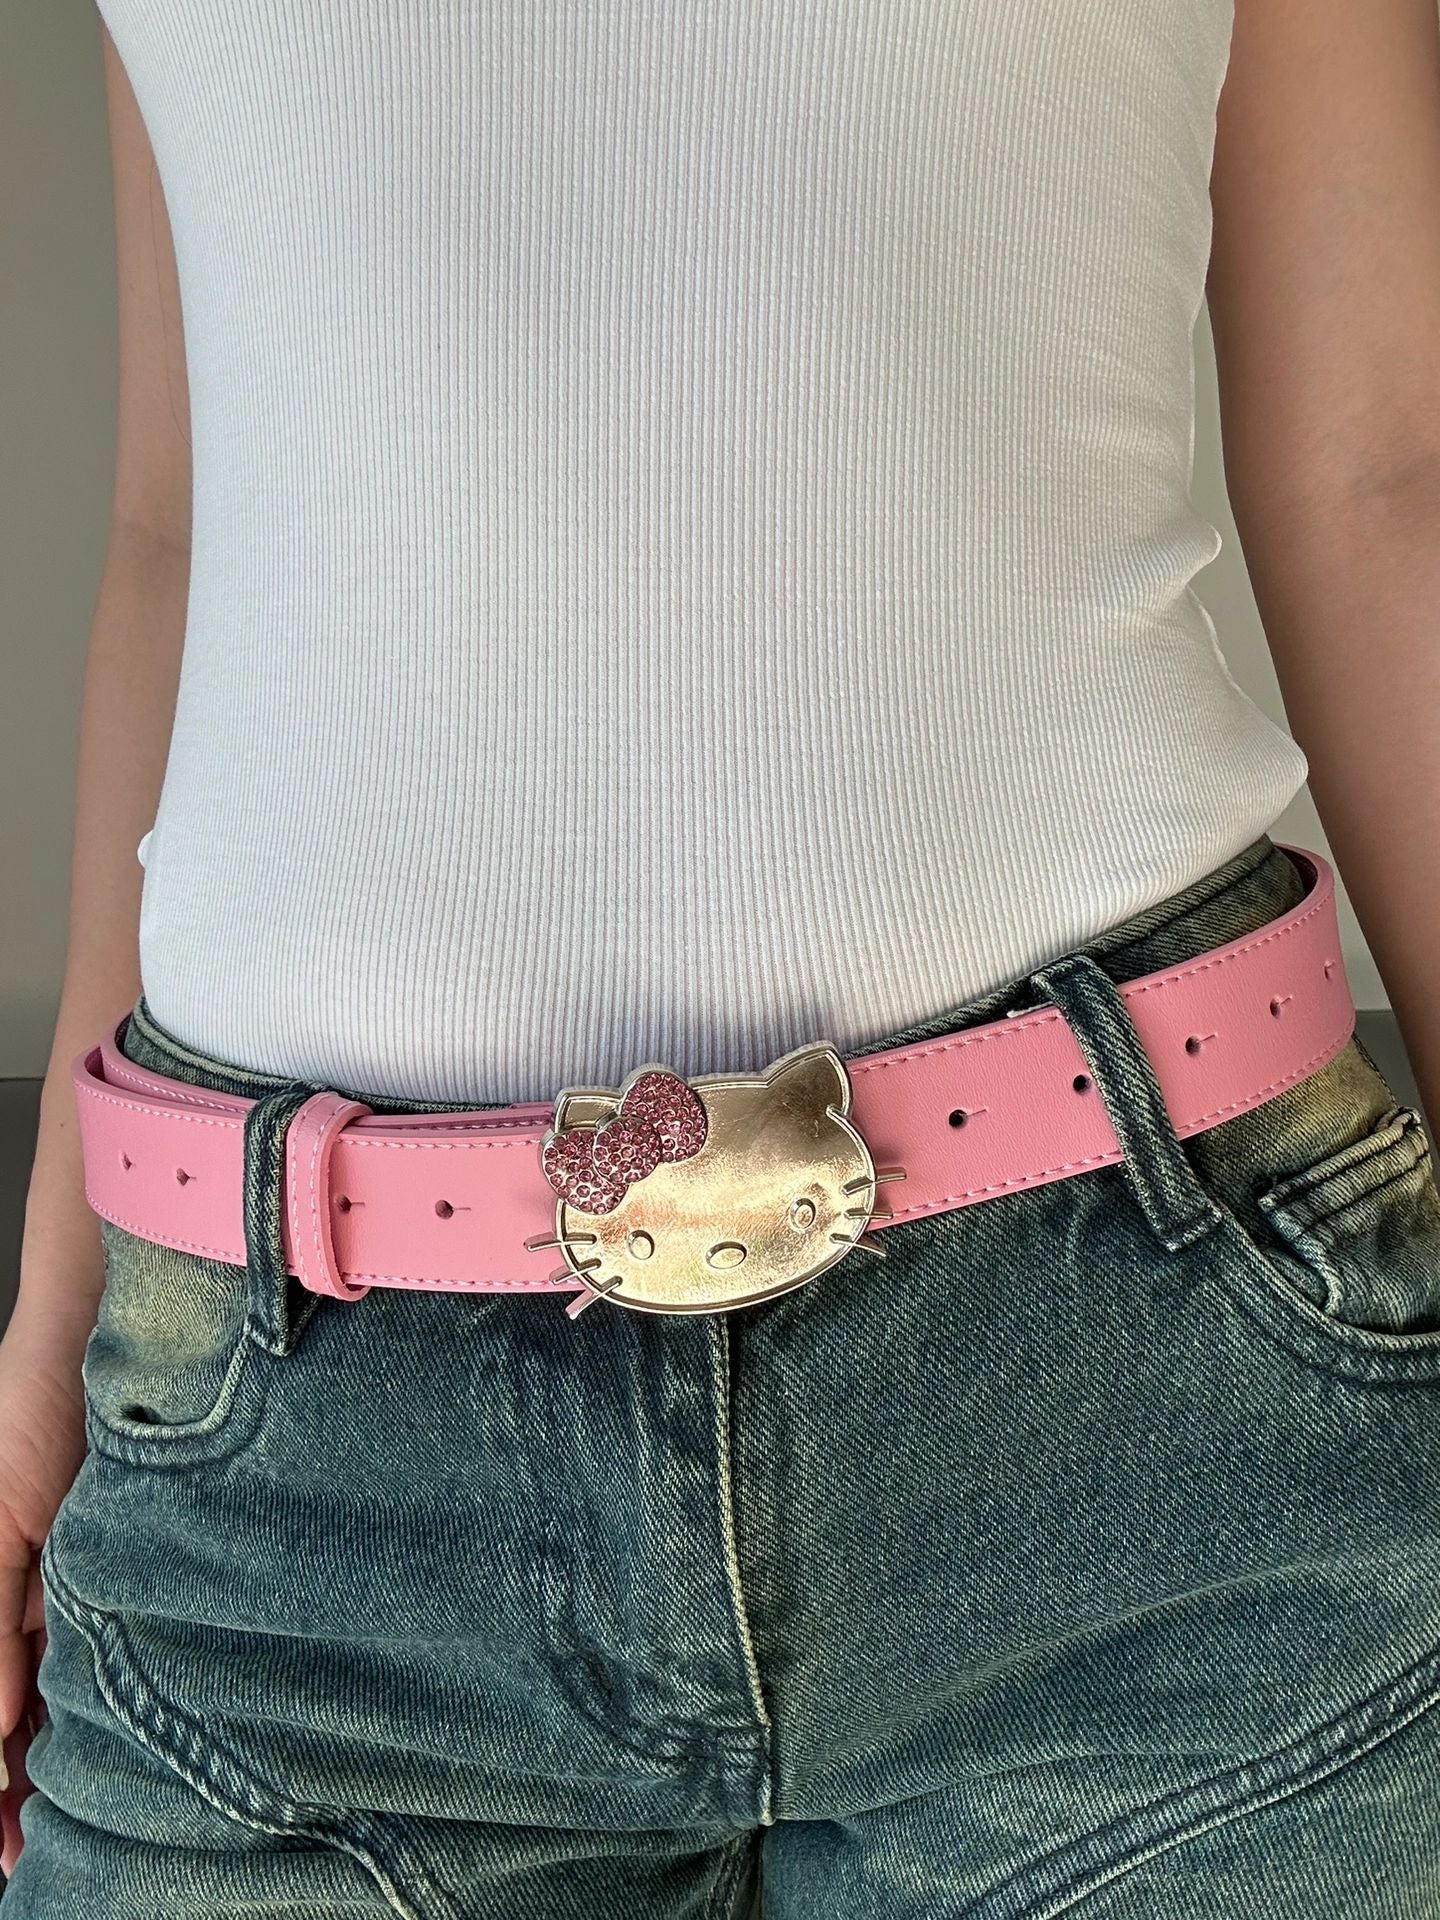 Hellokitty Rhinestone Belt Y2k Belt Cowgirl Leather Belt for Women